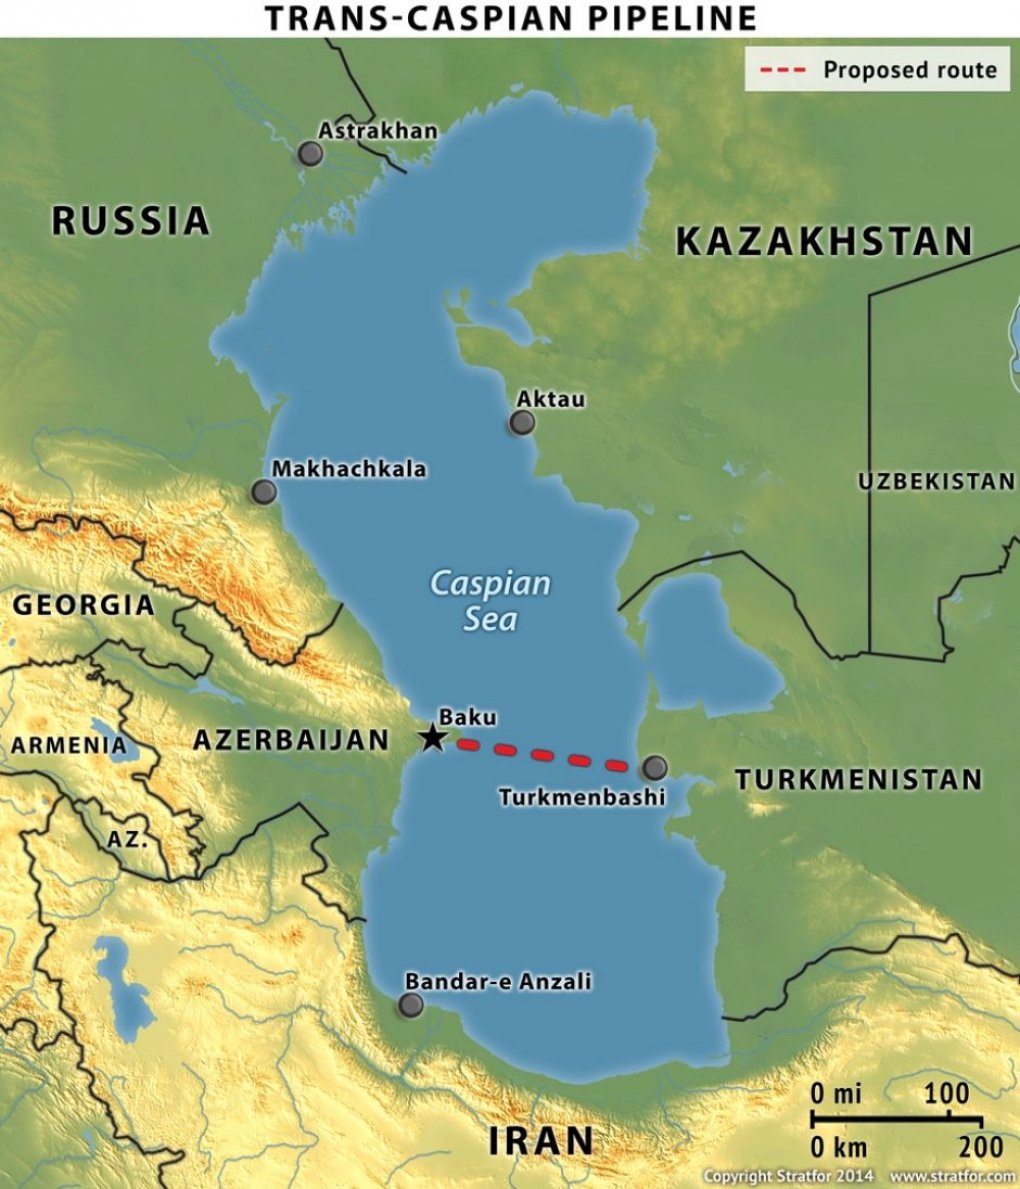 Карта каспий казахстан